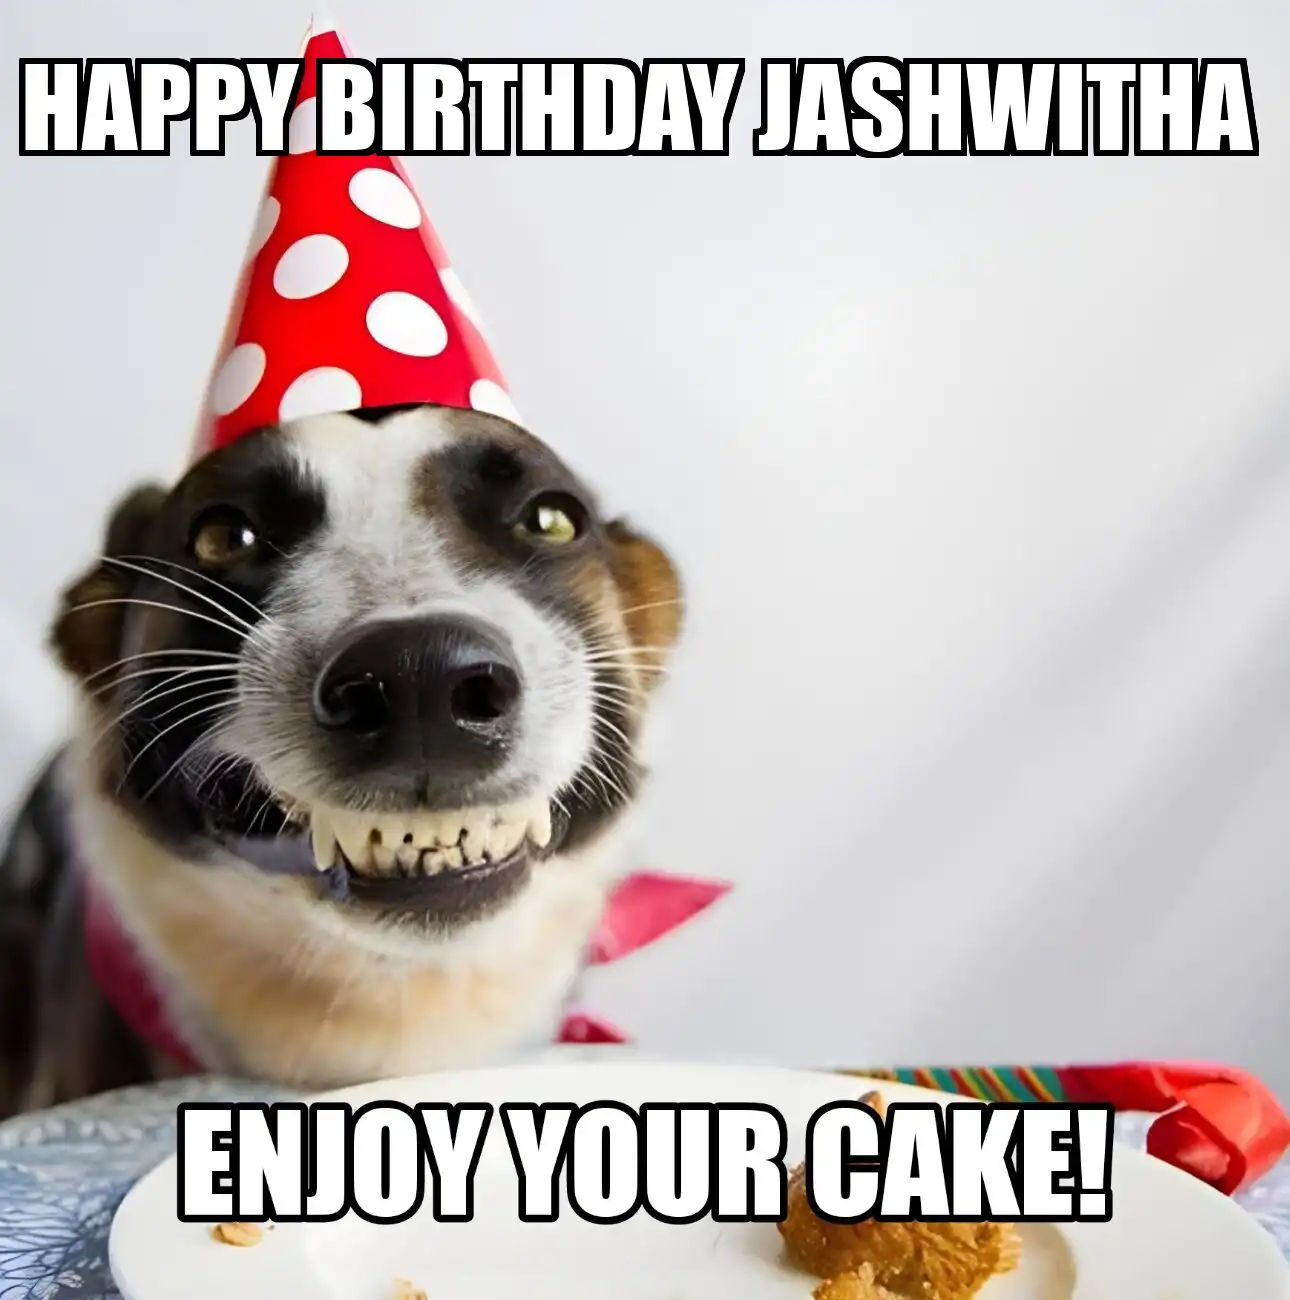 Happy Birthday Jashwitha Enjoy Your Cake Dog Meme